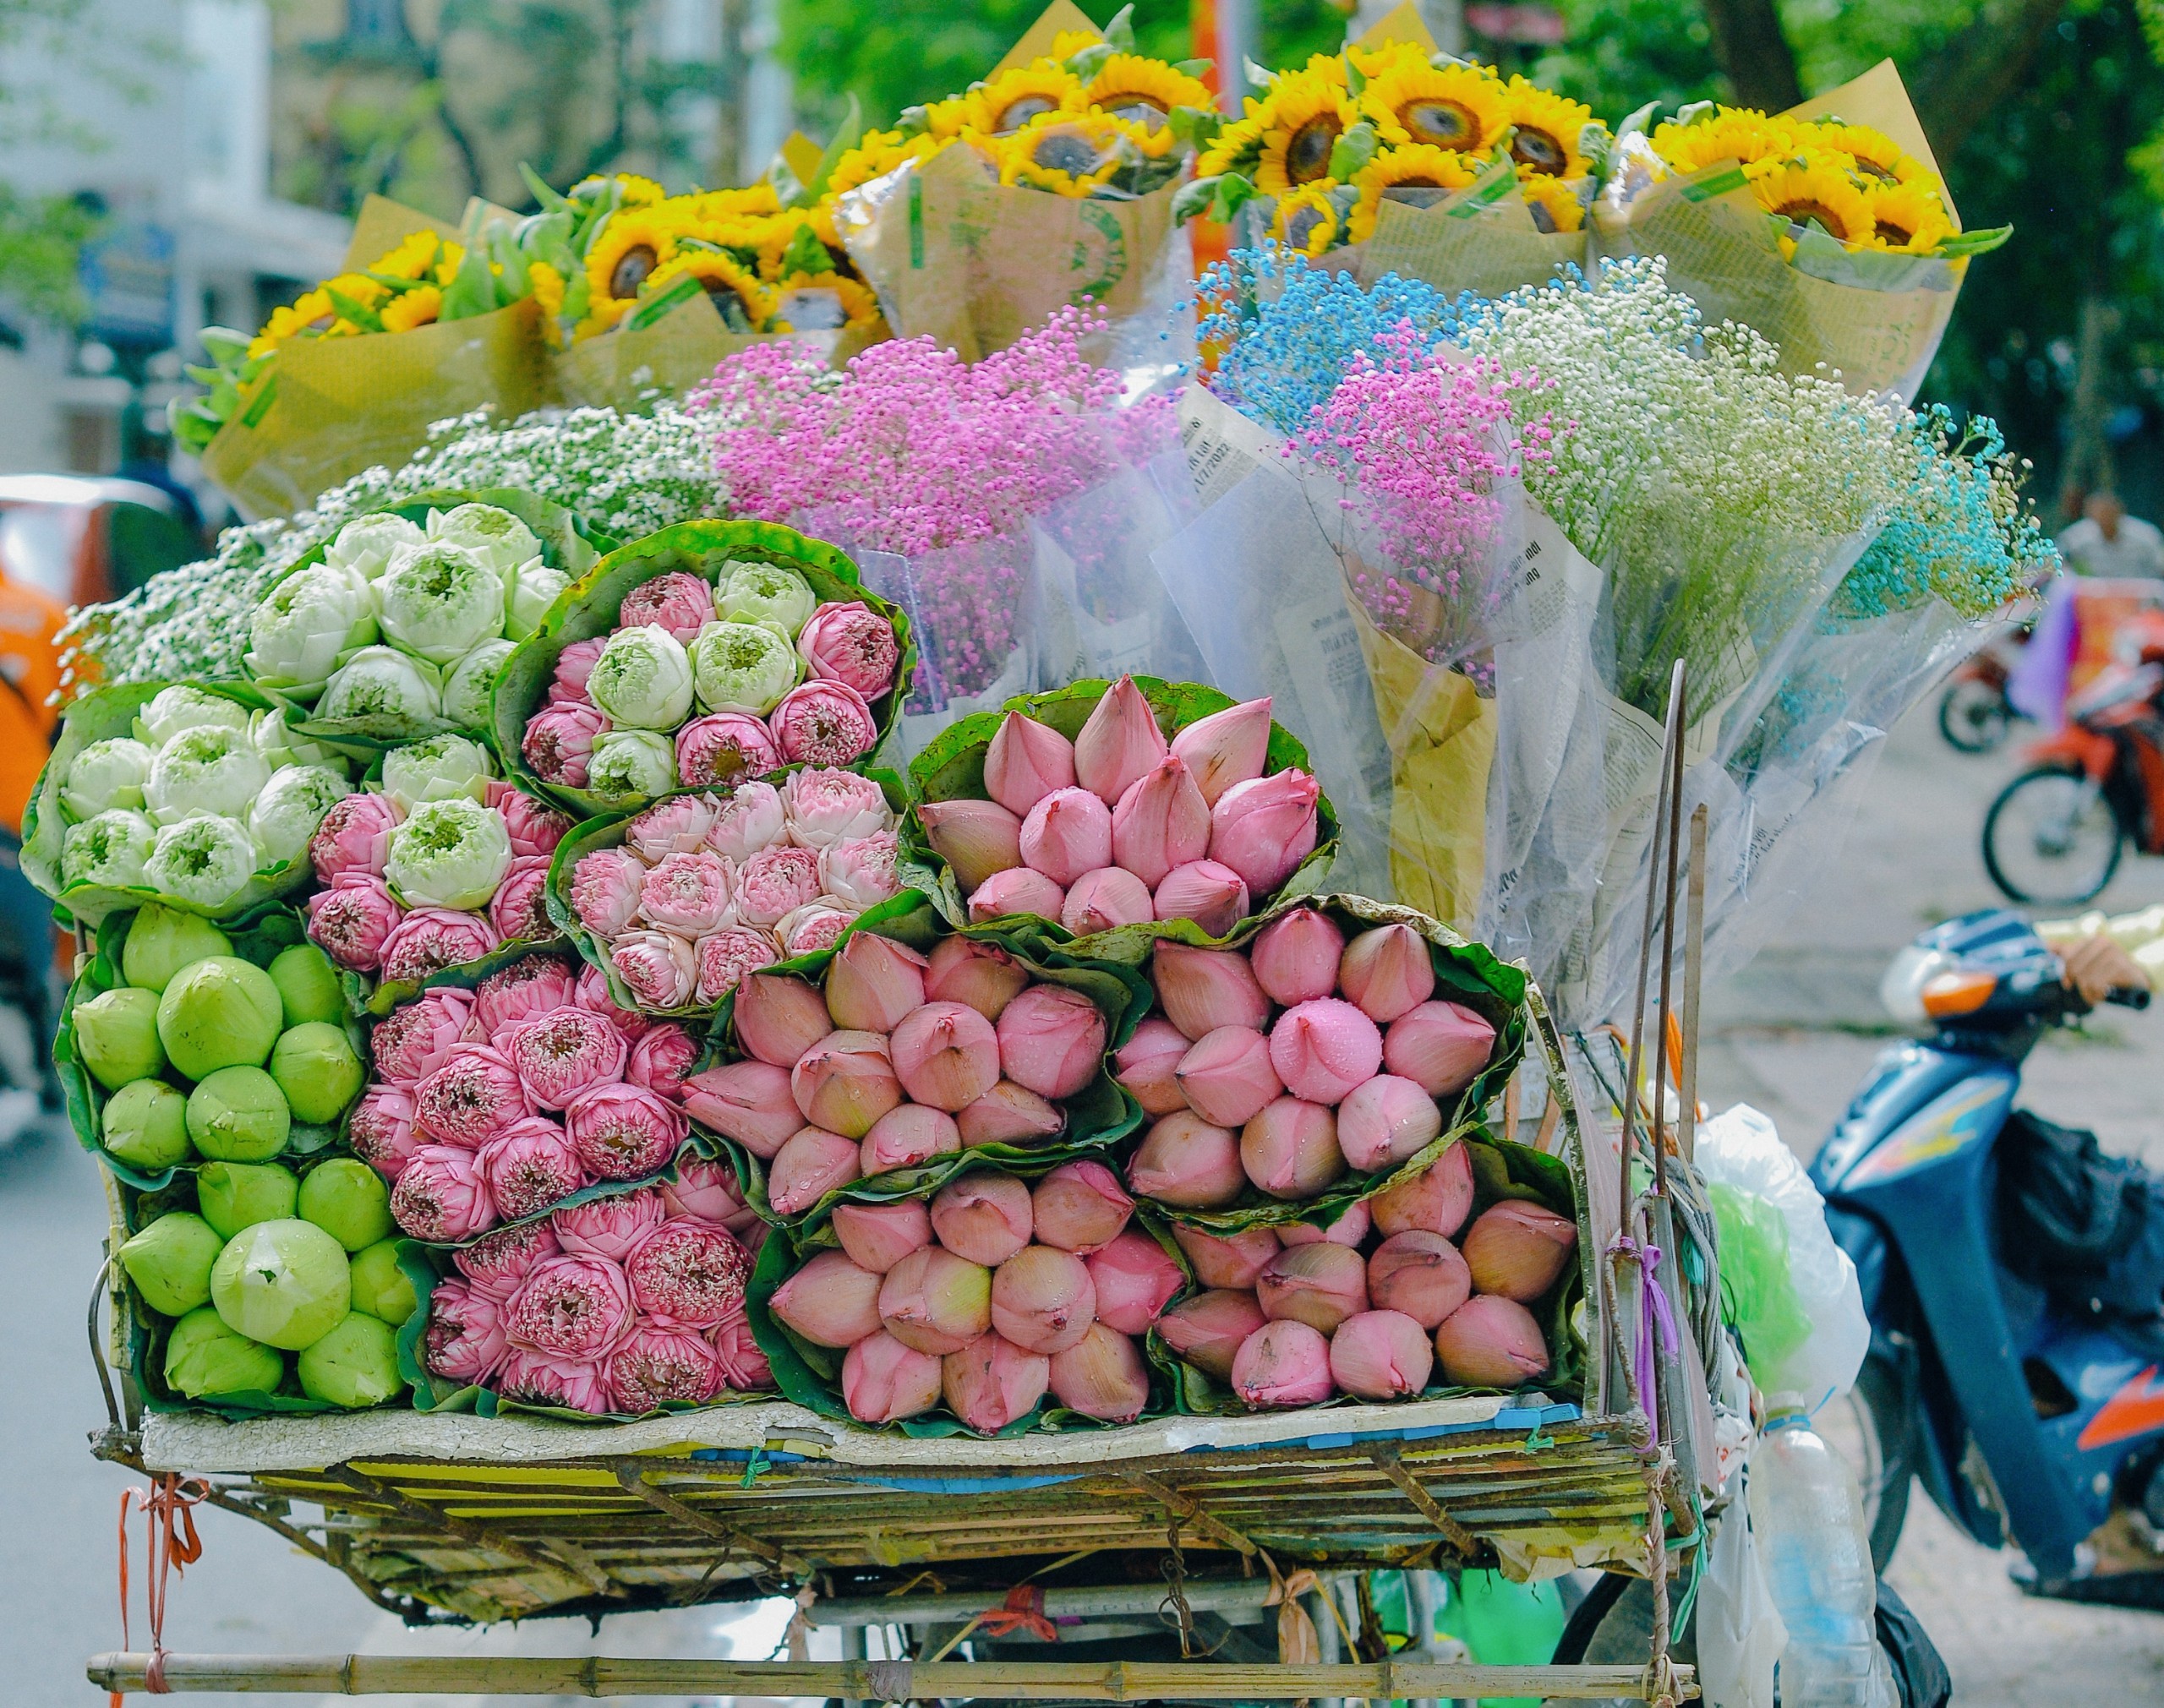 Hình ảnh này sẽ đưa bạn vào thế giới ngập tràn hoa tươi thơm của dòng xe hàng hoa. Bạn sẽ có thể cảm nhận được sự tuyệt vời từ những bó hoa đang được chuyên chở trên chiếc xe này.